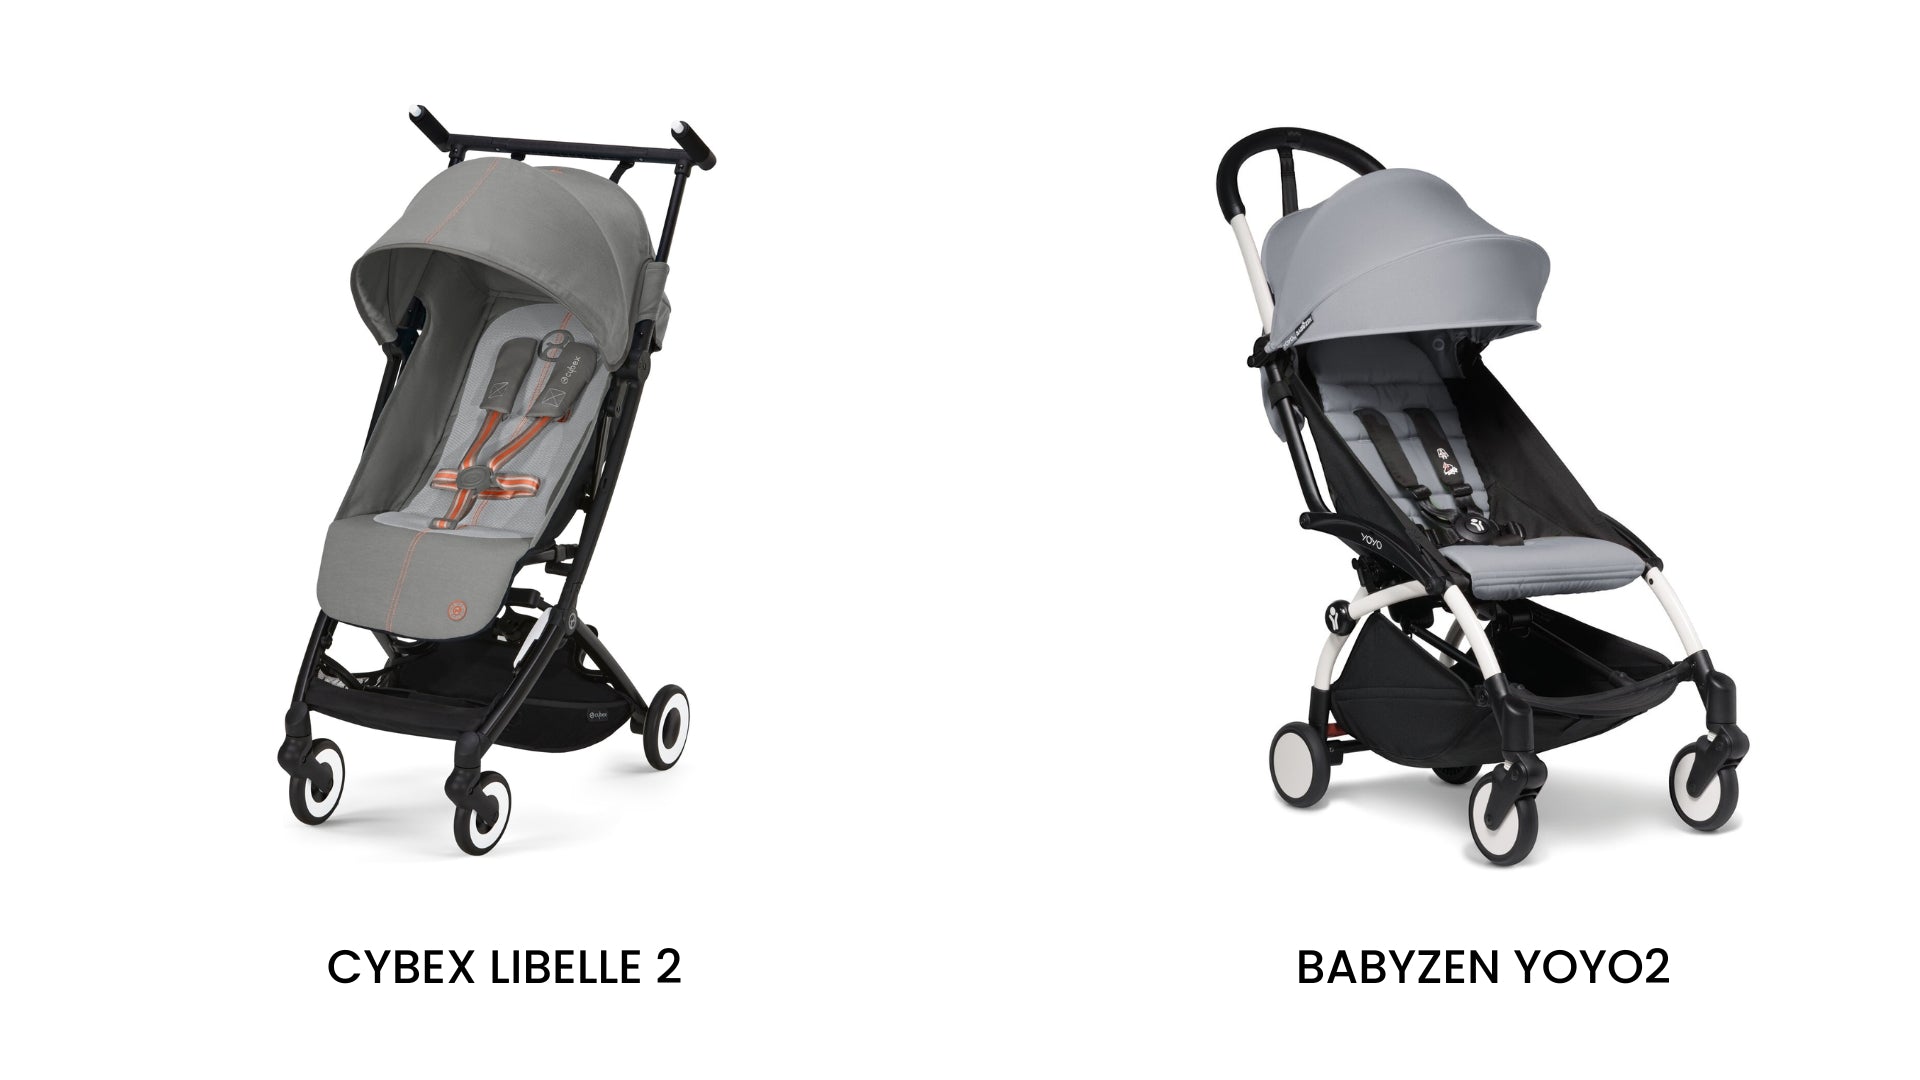 Cybex Libelle 2 vs. Babyzen YOYO2 Stroller Comparison